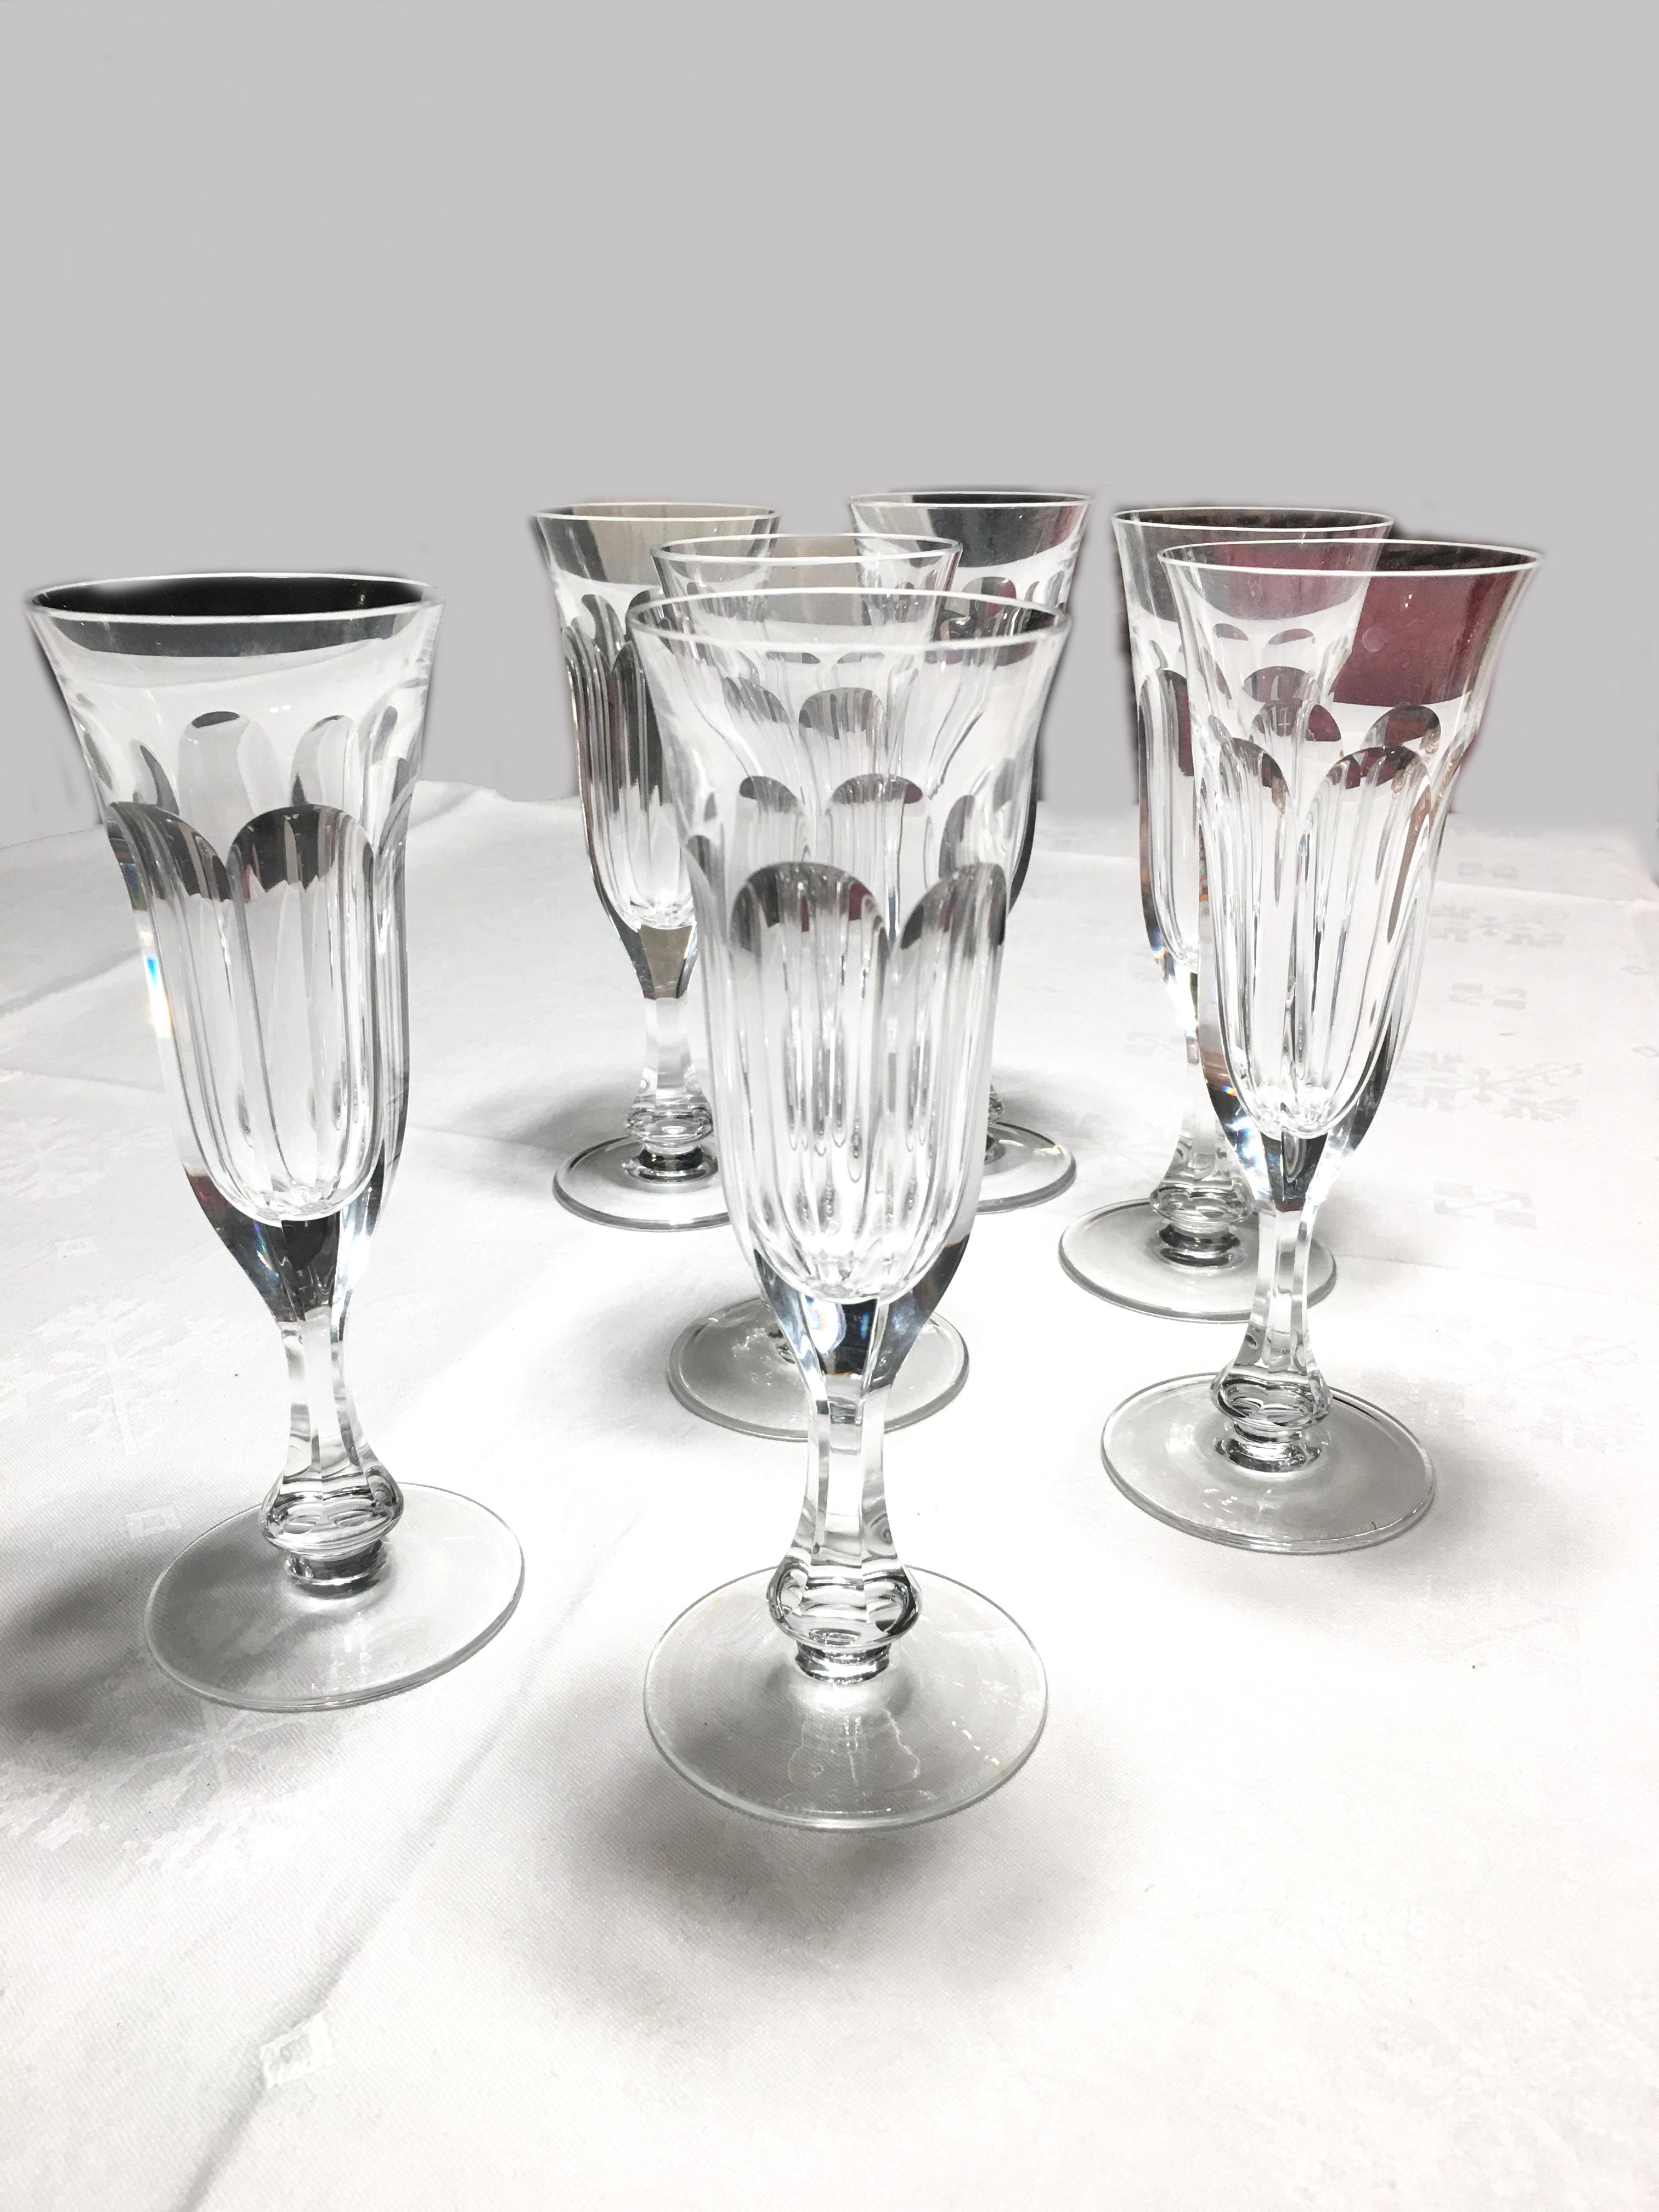 Dies sind 8 Champagnergläser aus mundgeblasenem Kristall von Moser im beliebten Lady Hamilton Glasschliff.

Dieses Muster ist ein Beispiel für den 